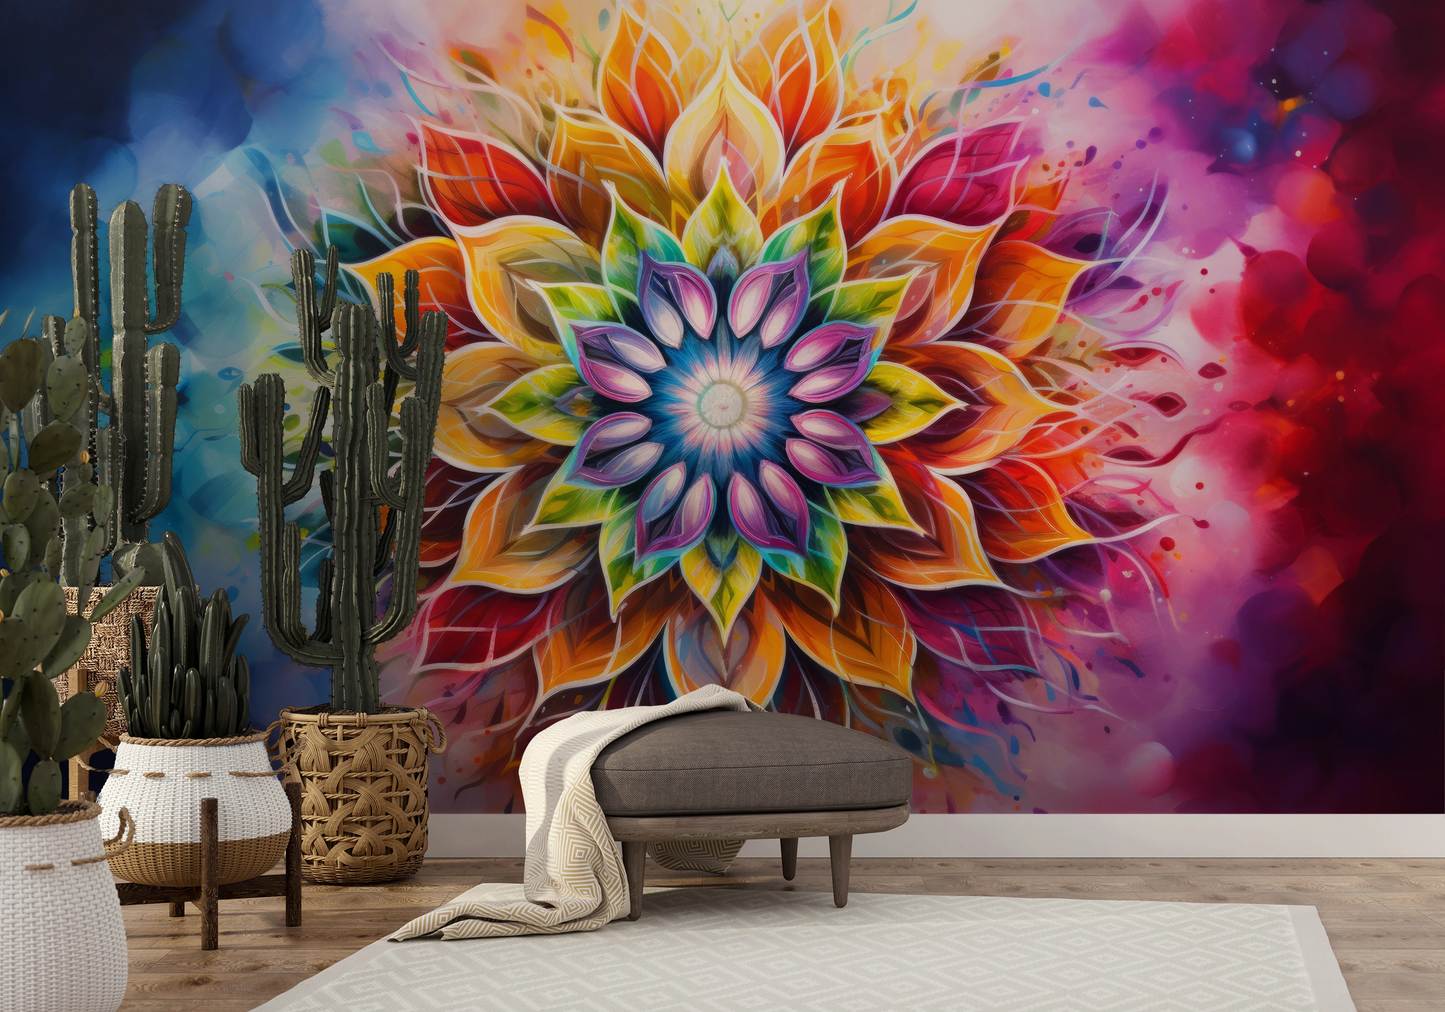 Fototapeta malowana o nazwie Vibrant Spirit pokazana w aranżacji wnętrza.